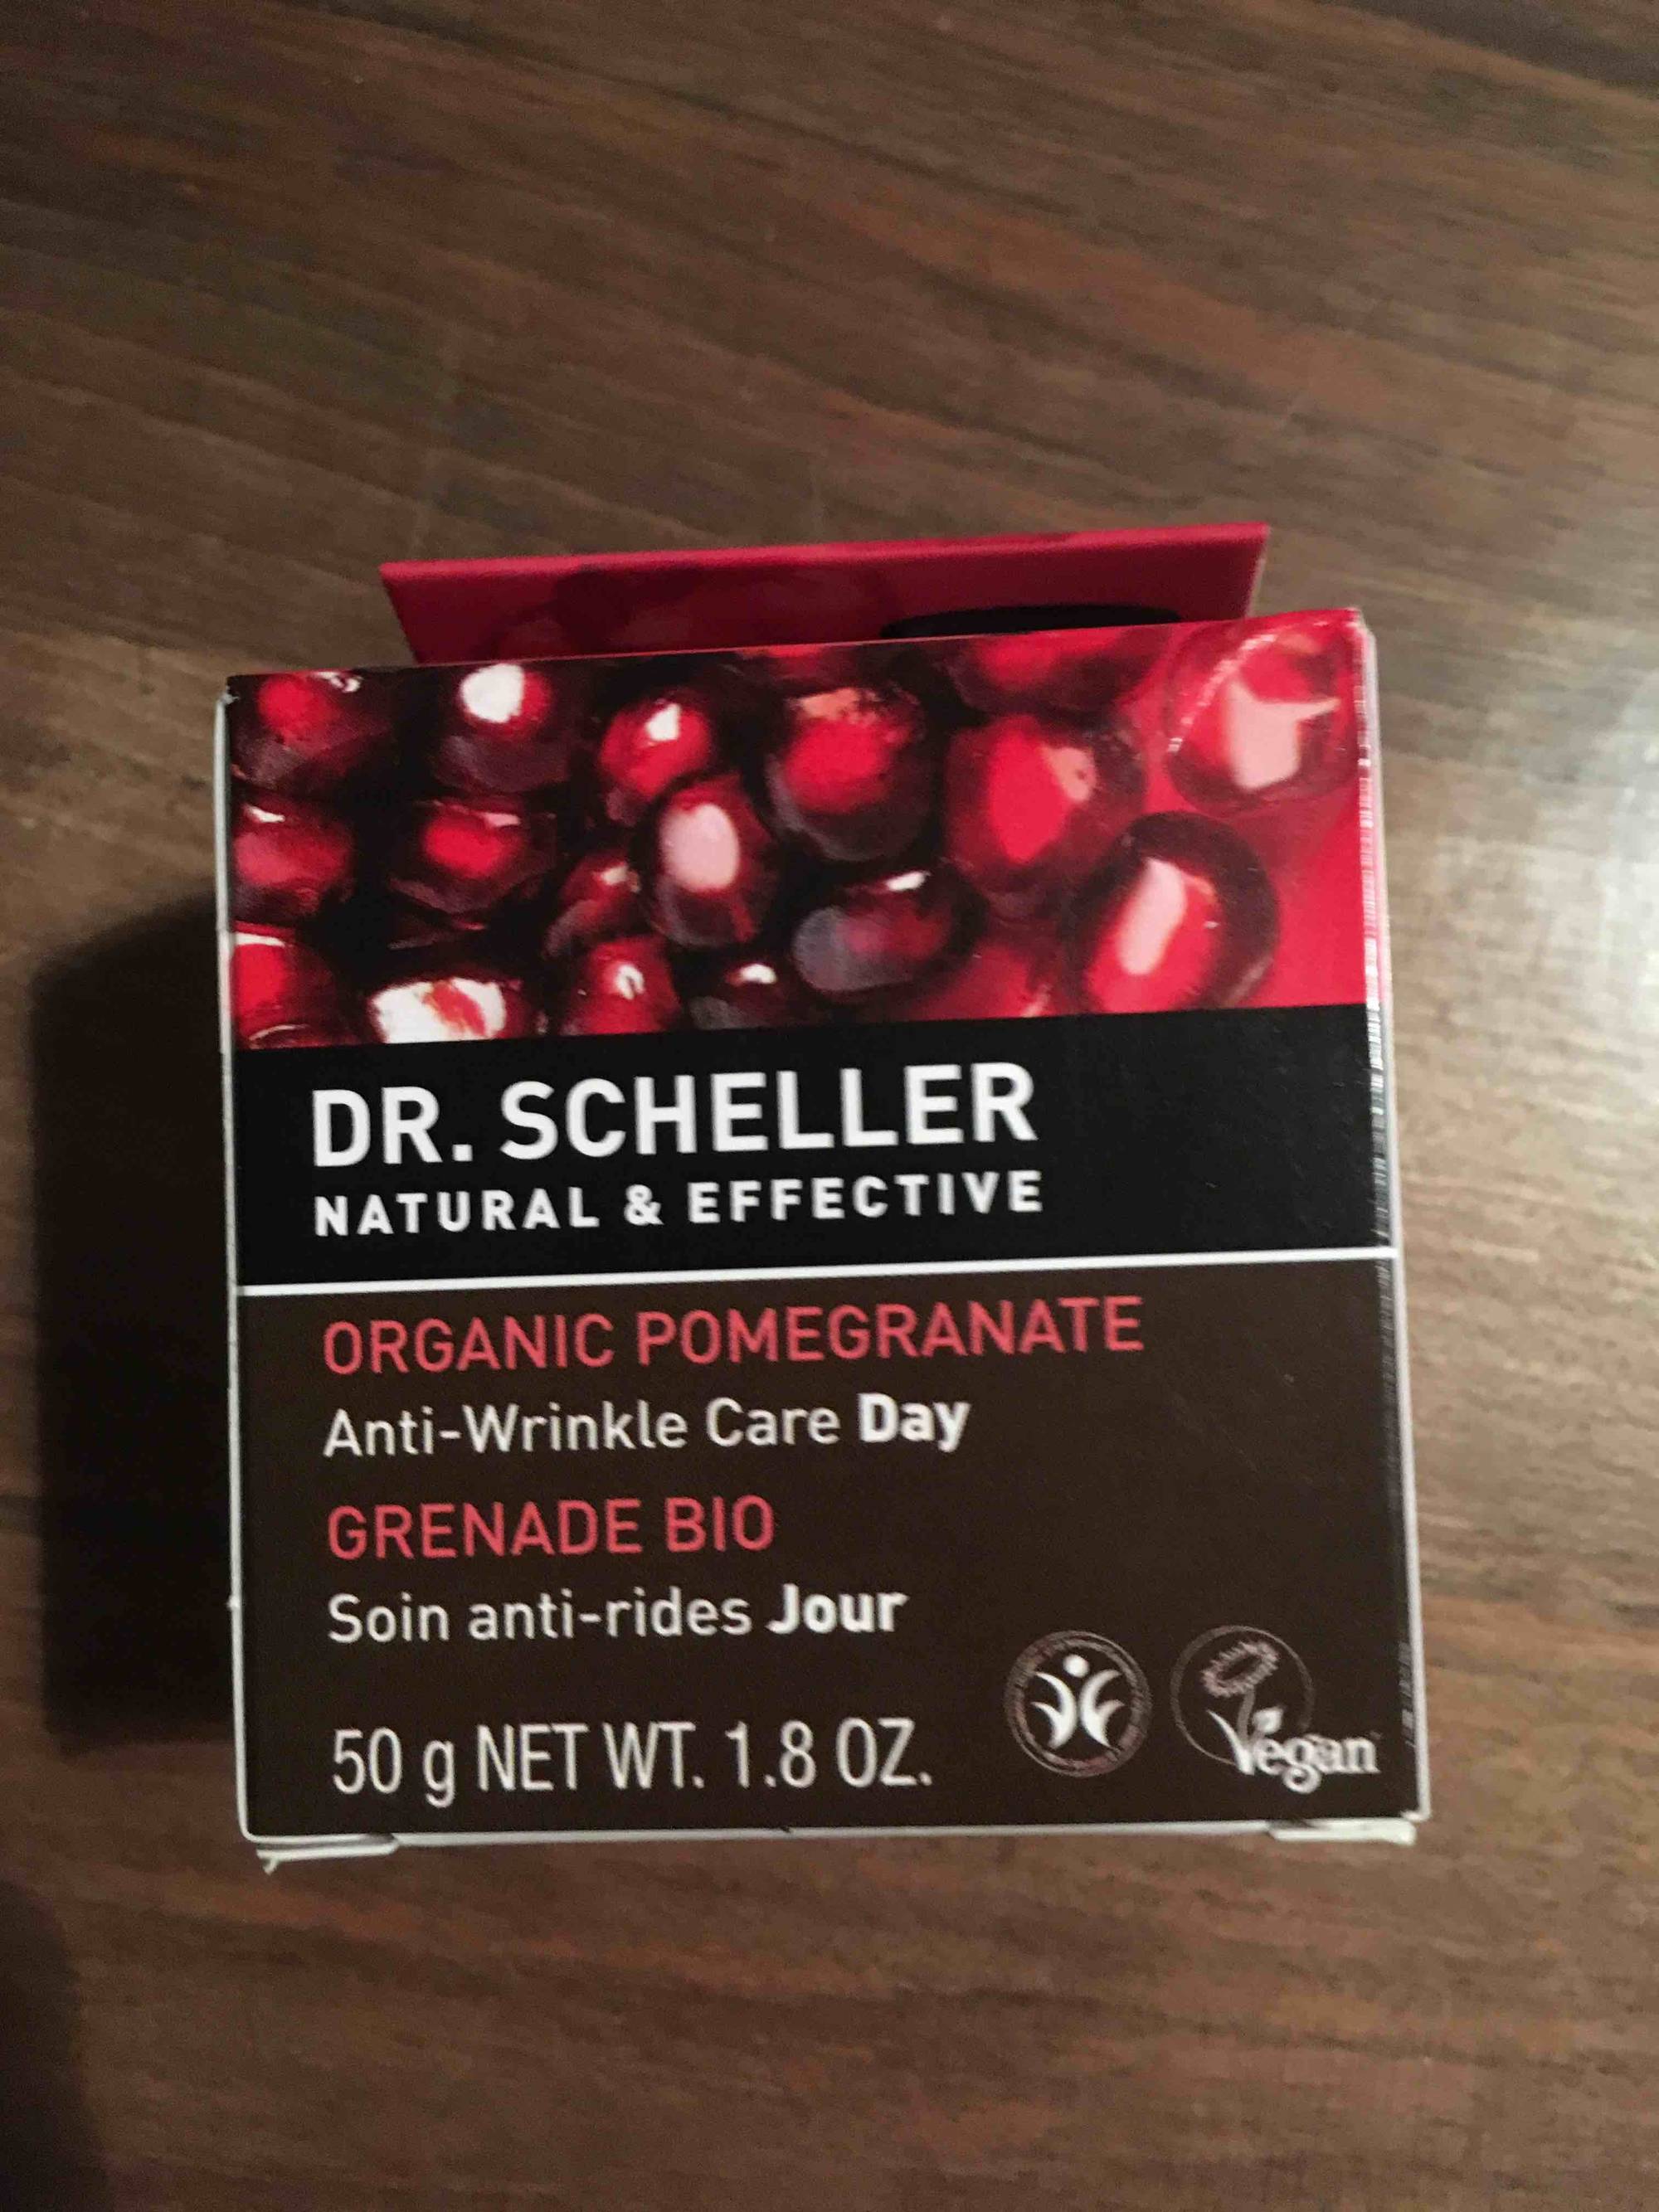 DR. SCHELLER - Grenade bio - Soin anti-rides jour